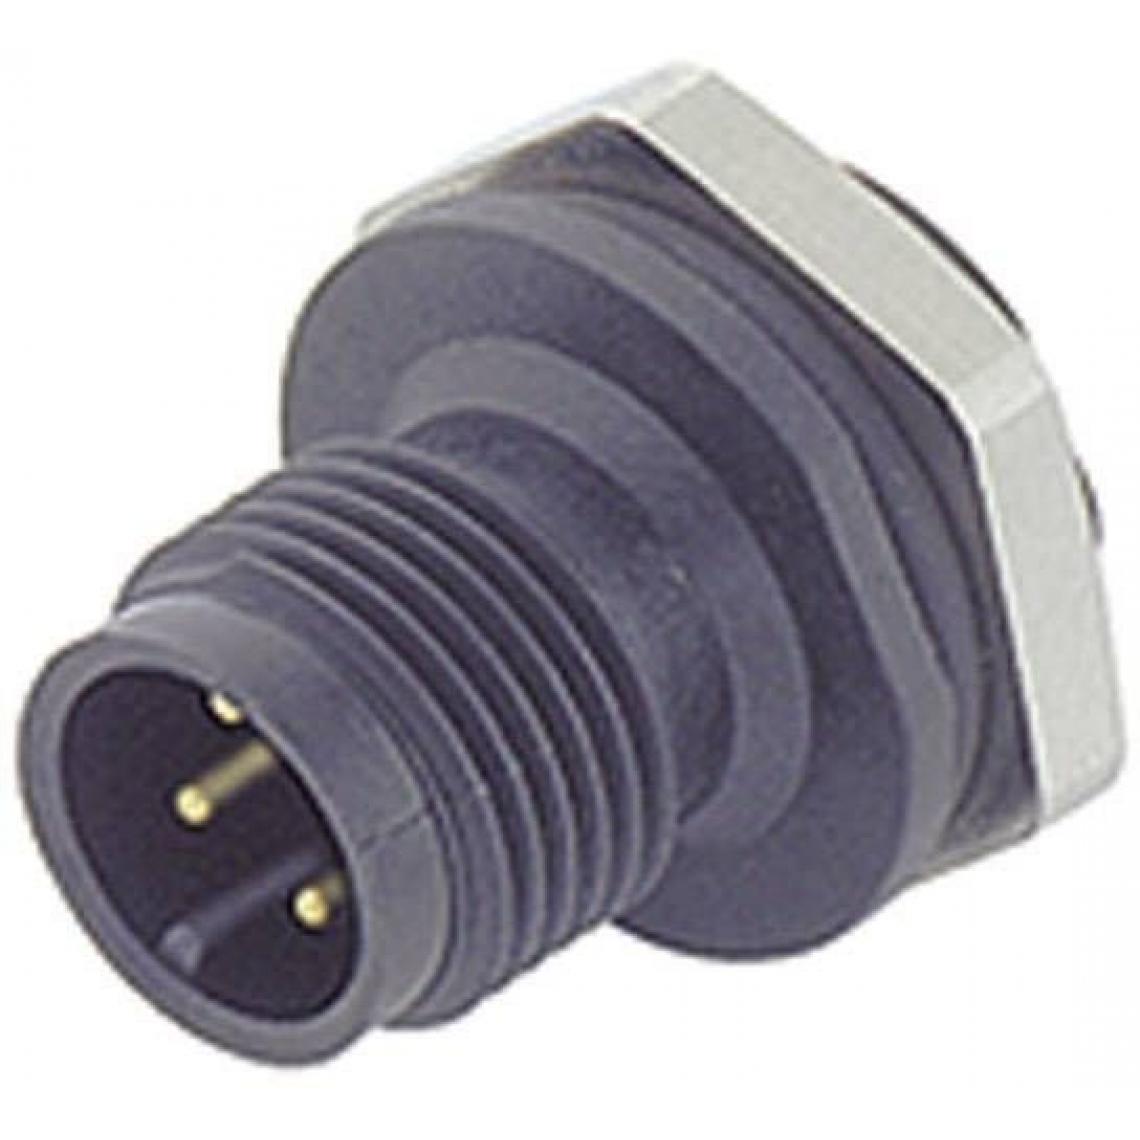 Inconnu - Binder Sensor-/Aktor-SteckverM12, Schraubverschluss, gerade Pole: 4 09-0431-387-04 Inhalt: 1St. - Interrupteurs et prises étanches